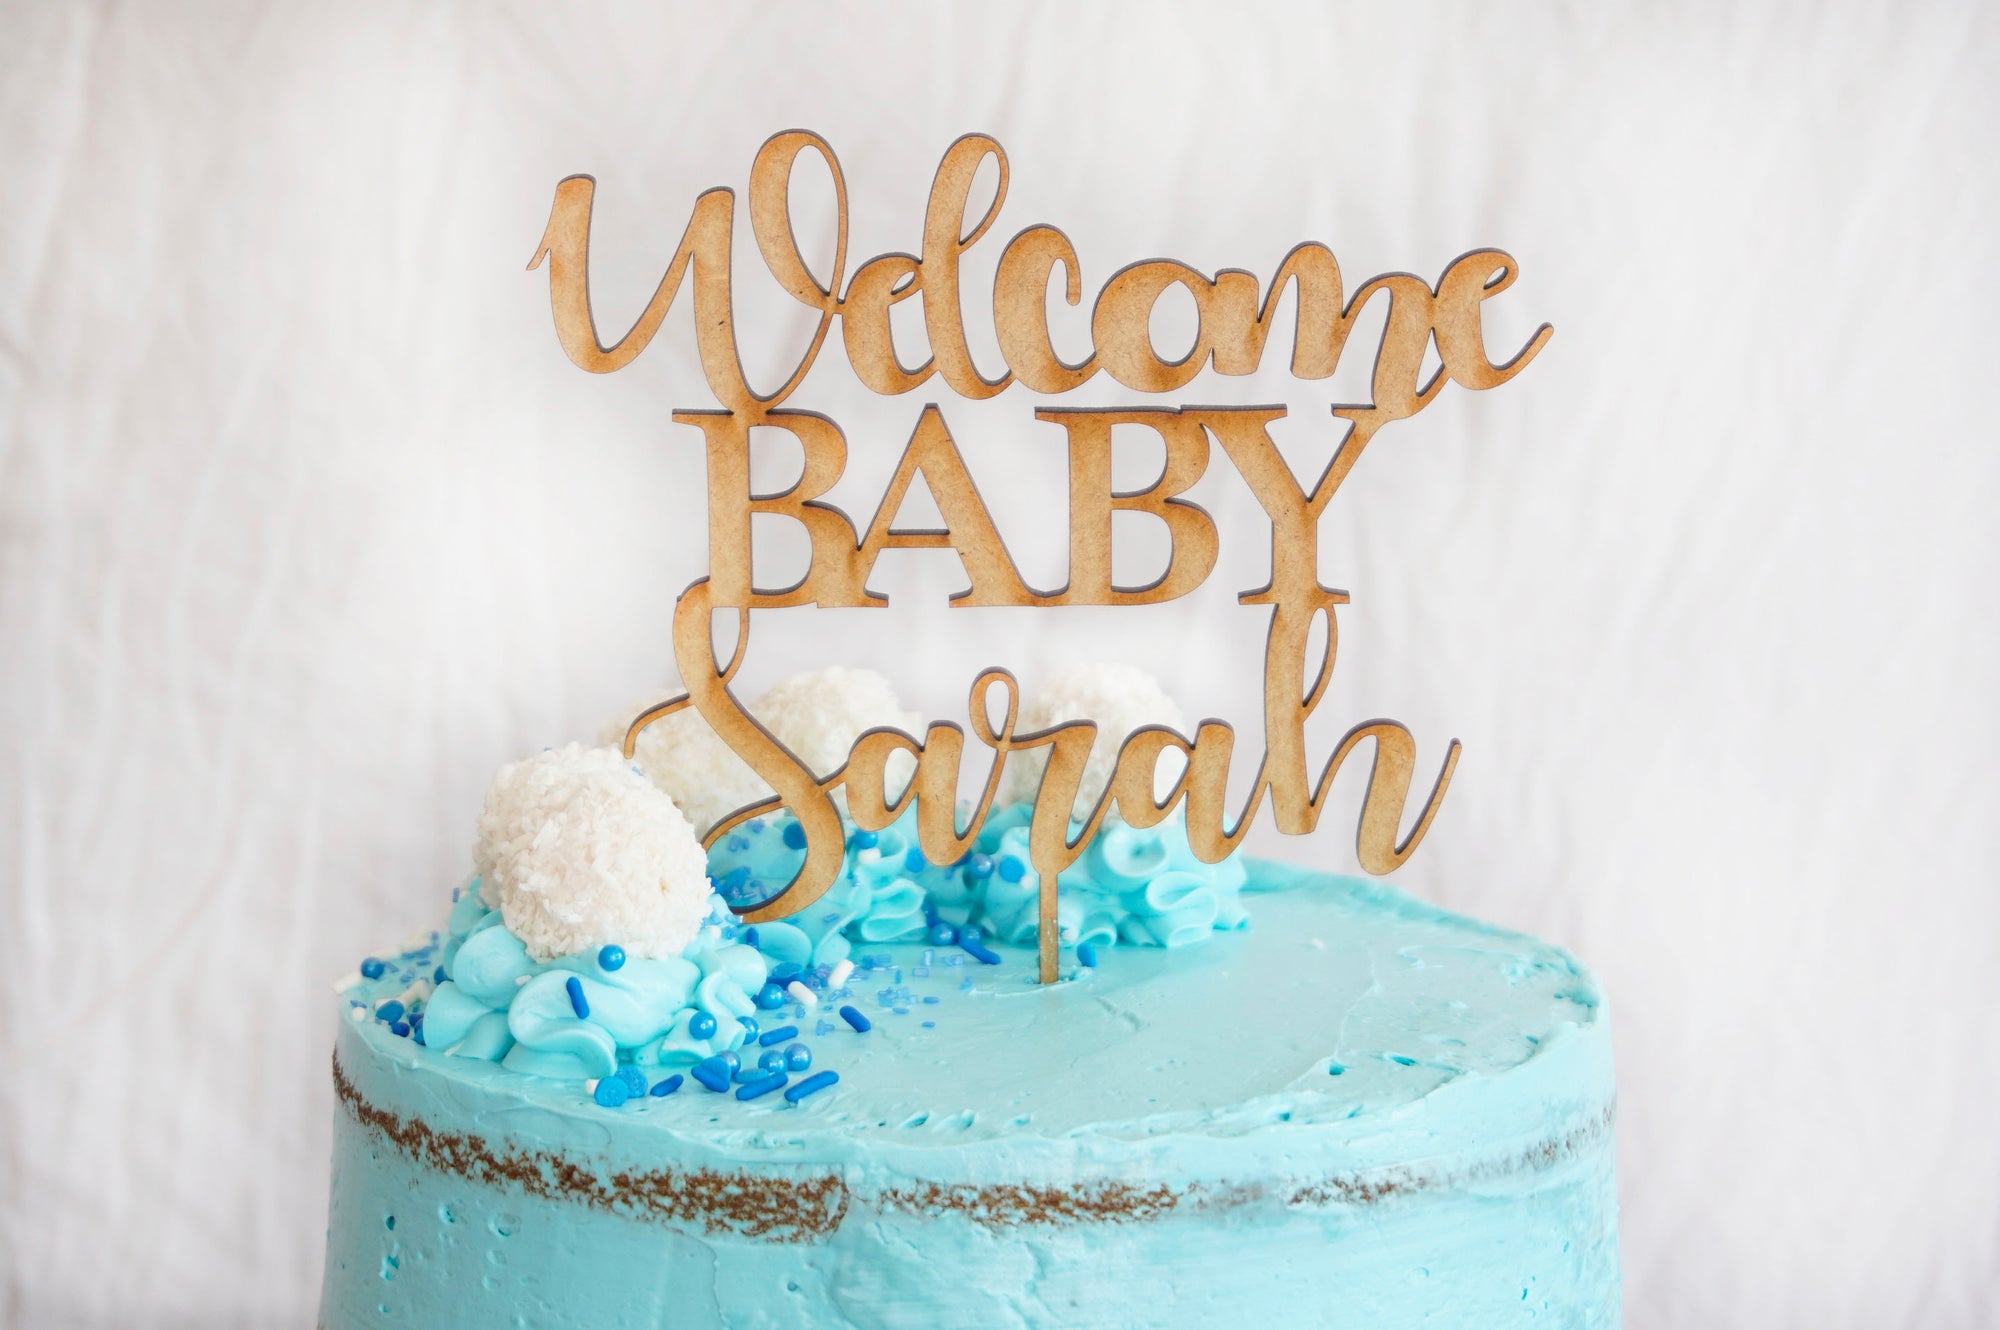 Welcome Baby Shower Cake Topper | Custom Cake Topper | Gender Reveal Cake Topper | Baby Girl or Boy Cake Topper | Wooden Cake Topper Gift, , designLEE Studio, designLEE Studio